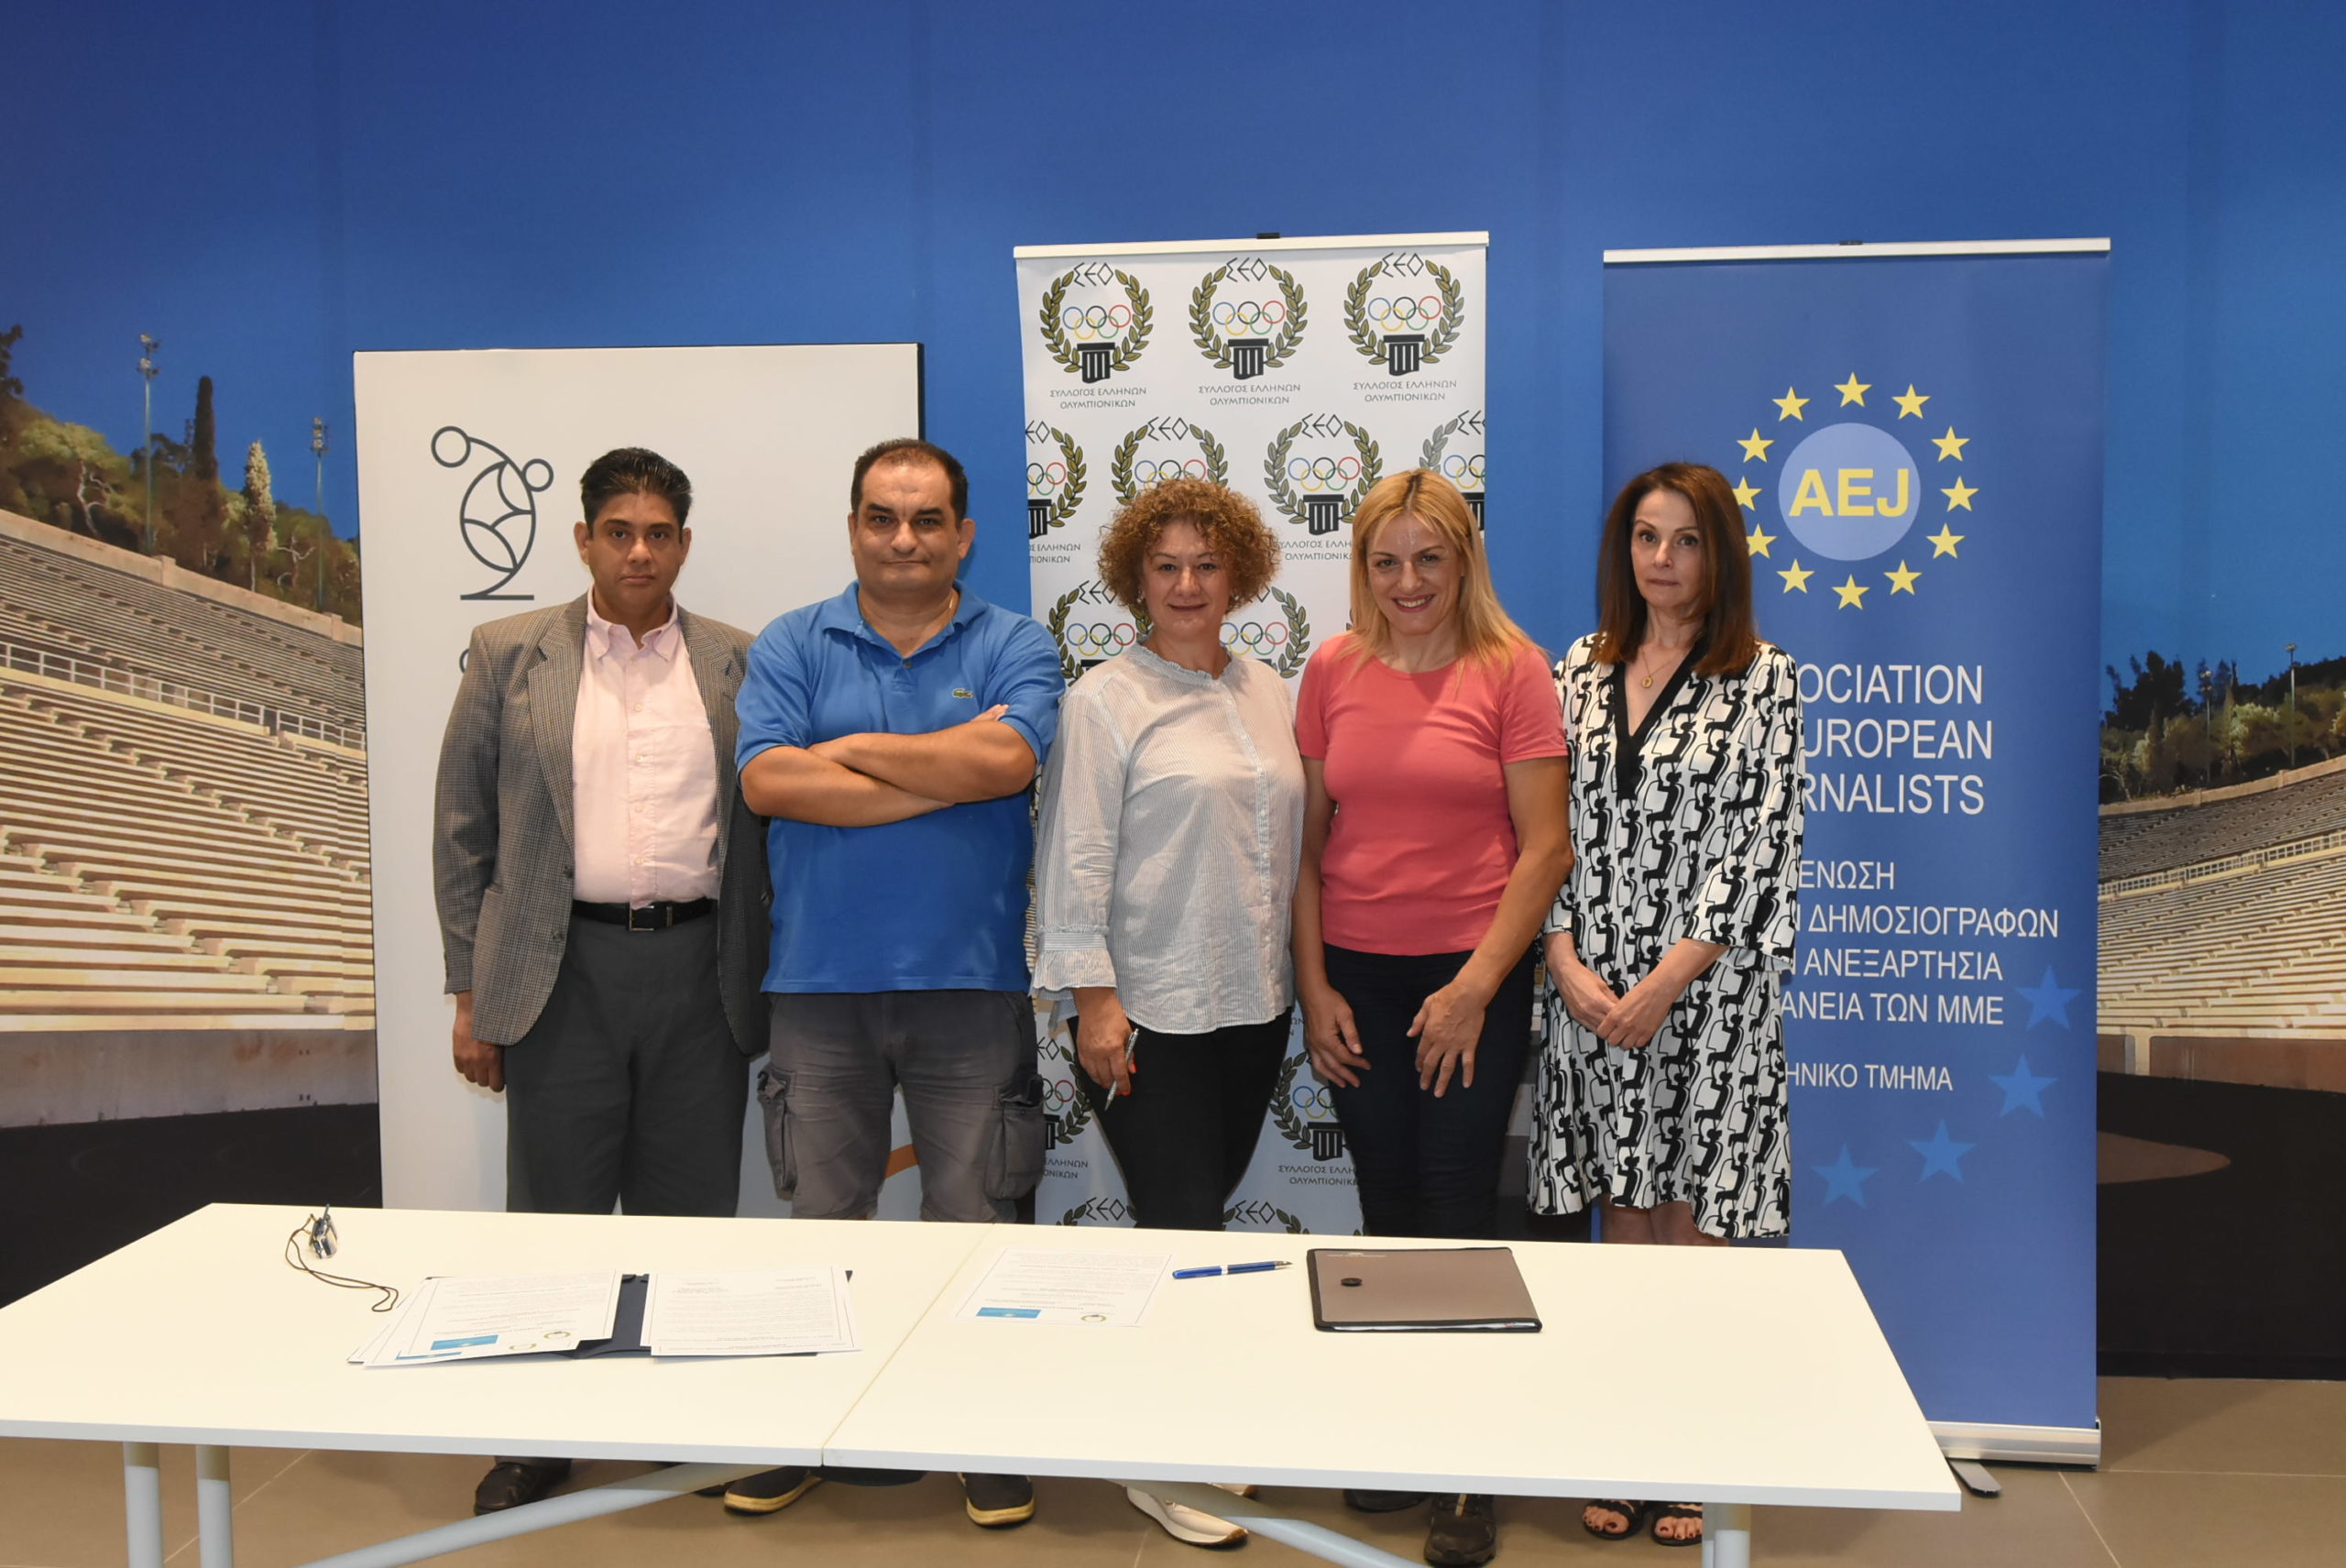 Ο Σύλλογος Ελλήνων Ολυμπιονικών (ΣΕΟ) ενώνει τις δυνάμεις του με την Ένωση Ευρωπαίων Δημοσιογράφων για την Ανεξαρτησία και τη Διαφάνεια των Μέσων Μαζικής Ενημέρωσης και Επικοινωνίας (ΕΕΔΑΔ).